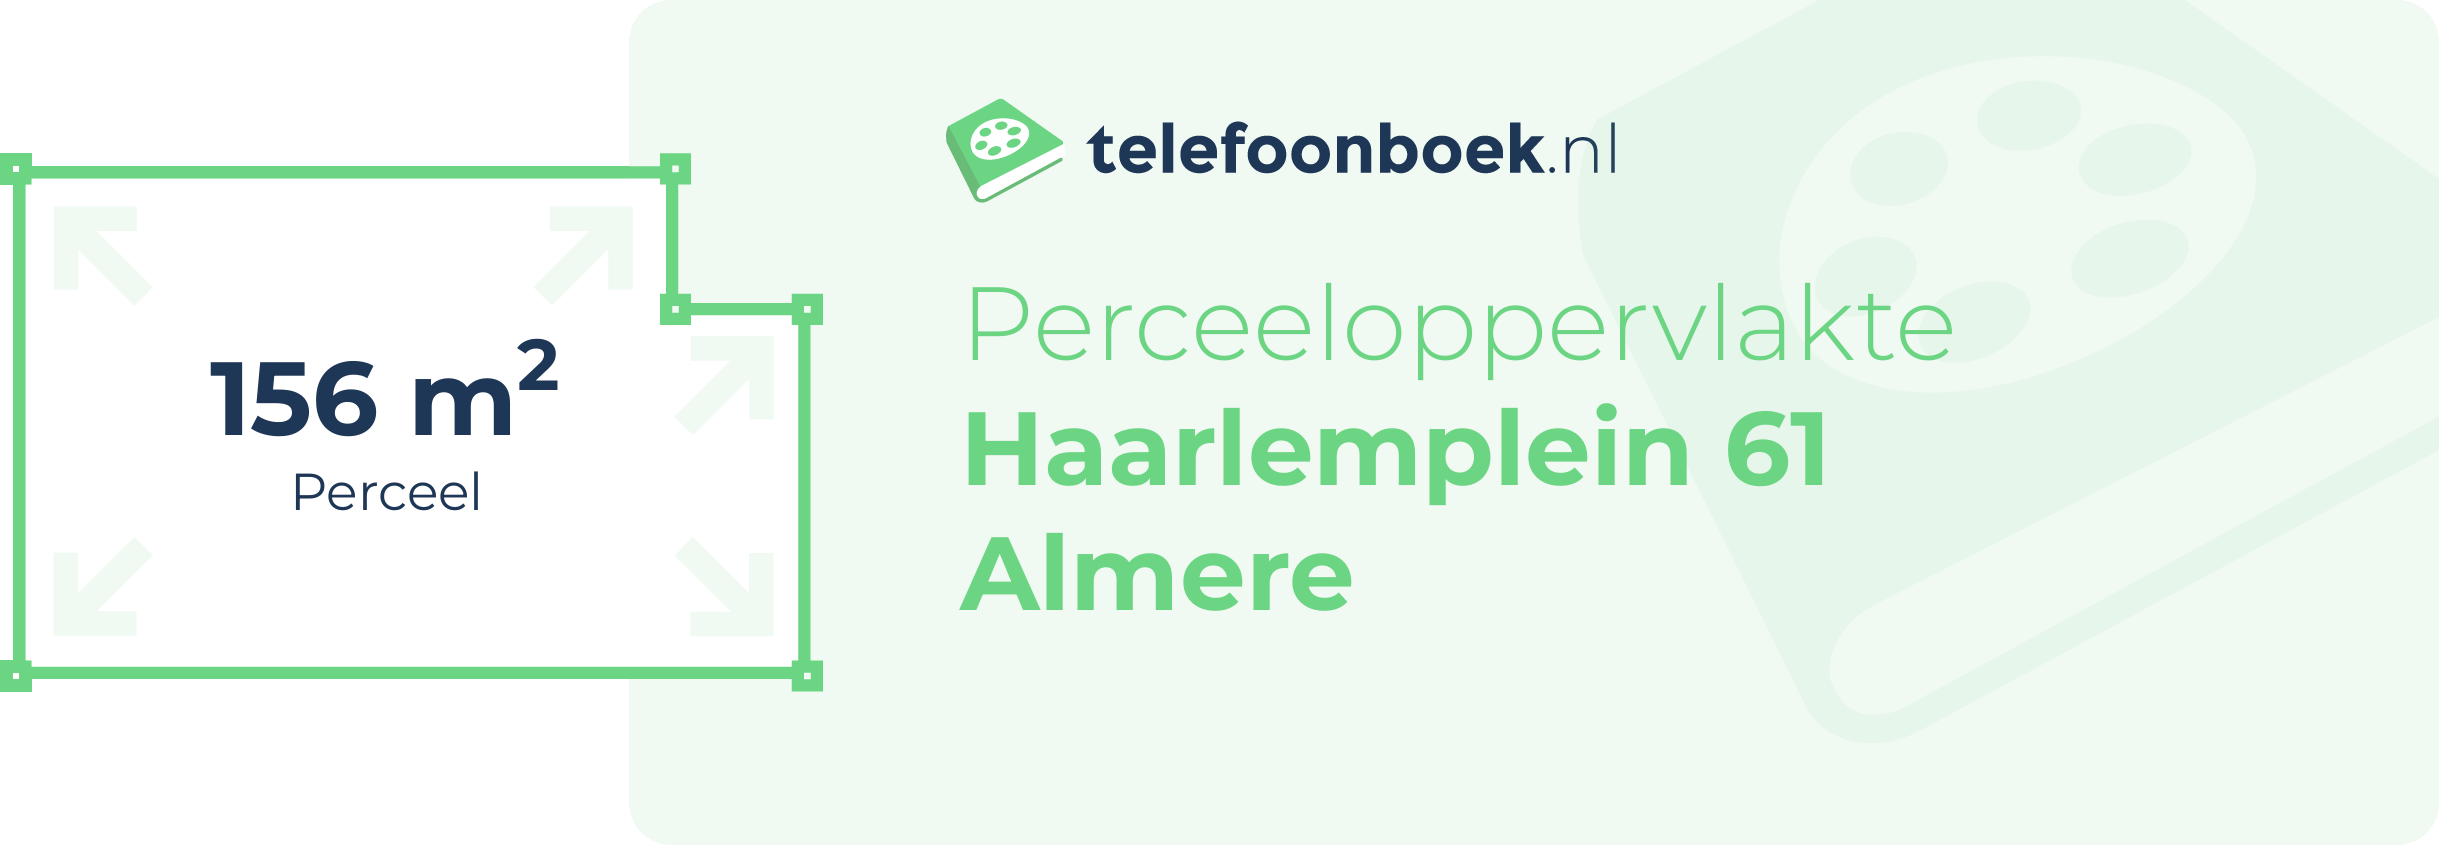 Perceeloppervlakte Haarlemplein 61 Almere